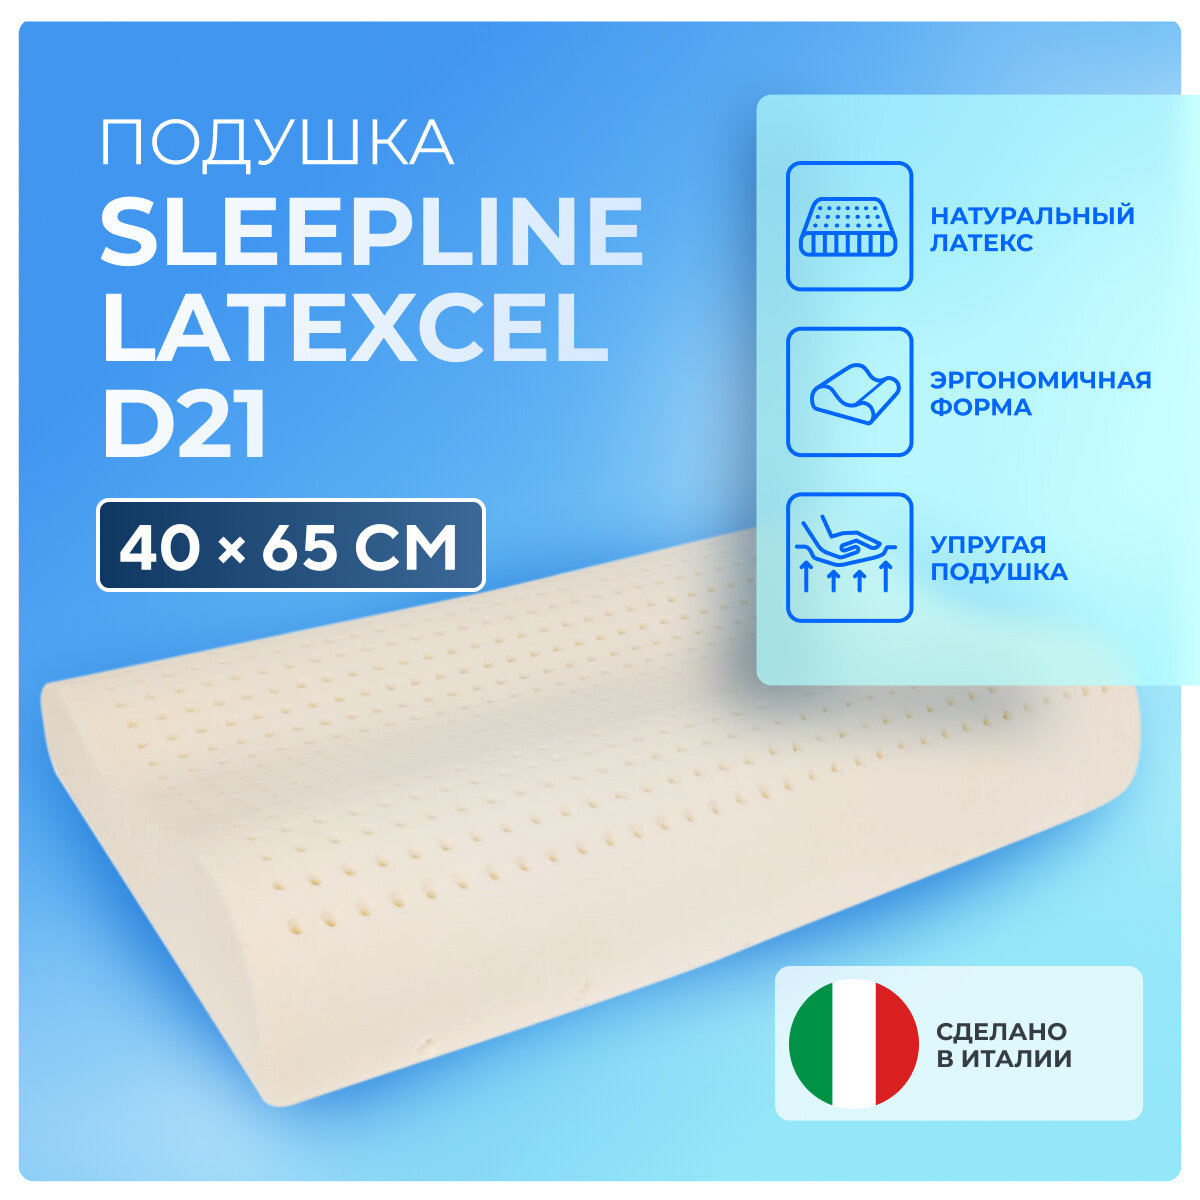 Подушка Sleepline Latexcel D21